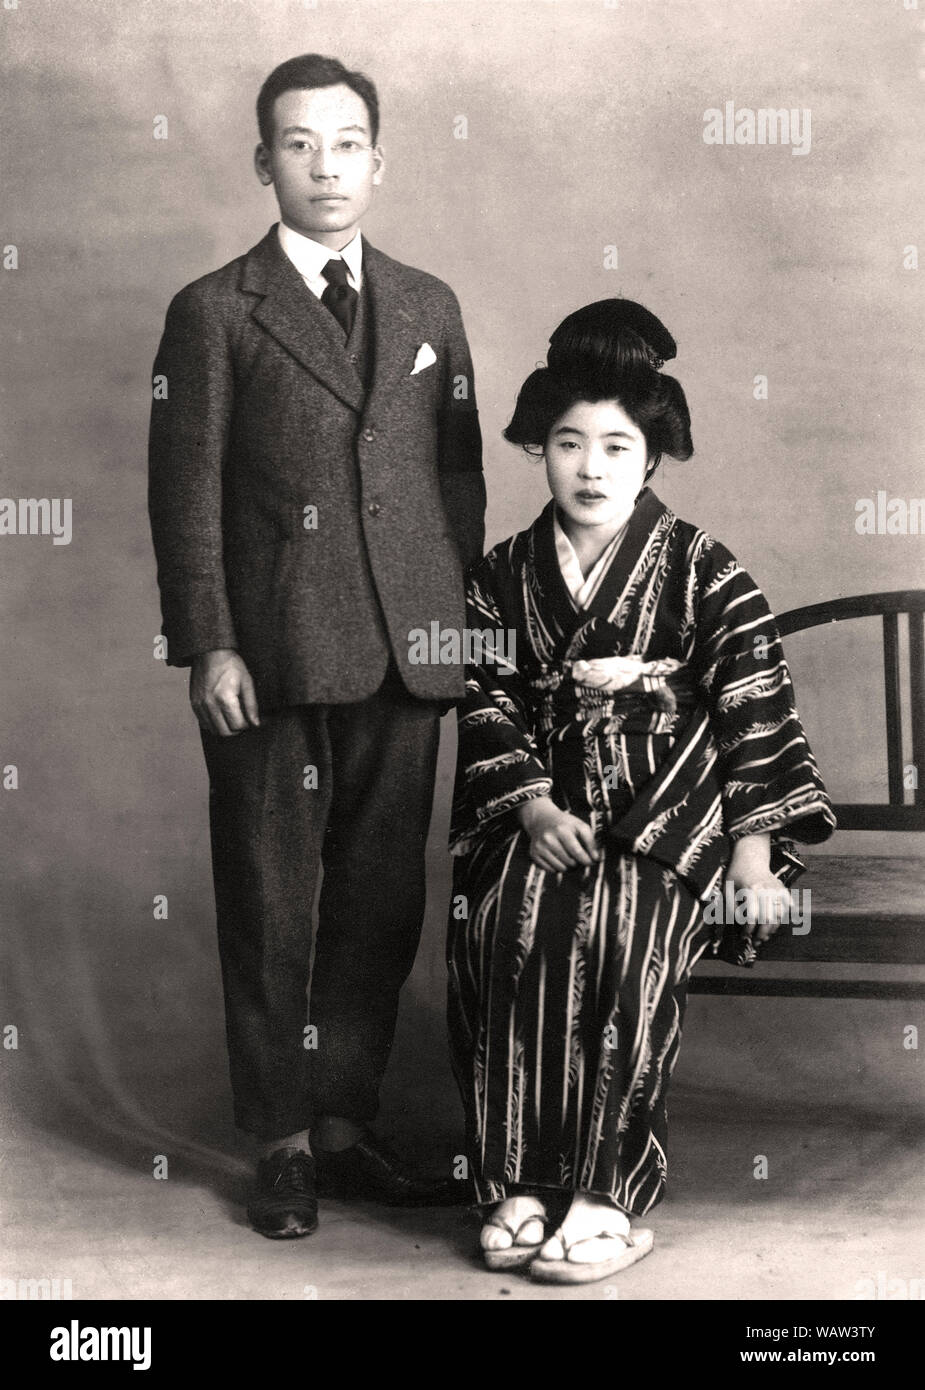 [1920s Japan - jungen japanischen Paar] - jungen japanischen Paar. Der 33 Jahre alte Mann trägt einen westlichen Anzug und seine 24 Jahre alte Ehefrau im traditionellen Kimono. Foto ist vom Jan 1926 (Showa 2). 20. Jahrhundert vintage Silbergelatineabzug. Stockfoto